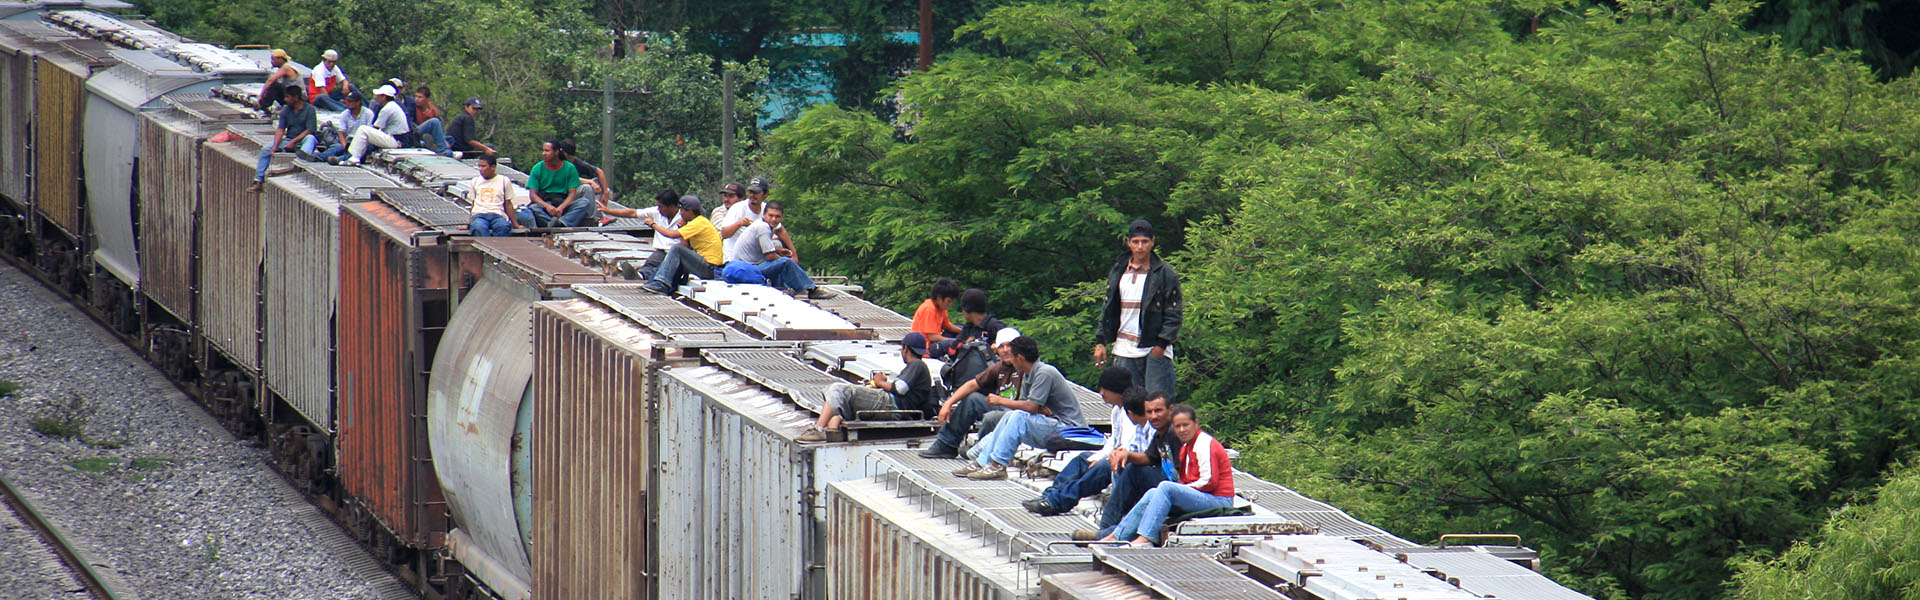 Cinquant’anni d’impegno per la giustizia sociale in America Latina